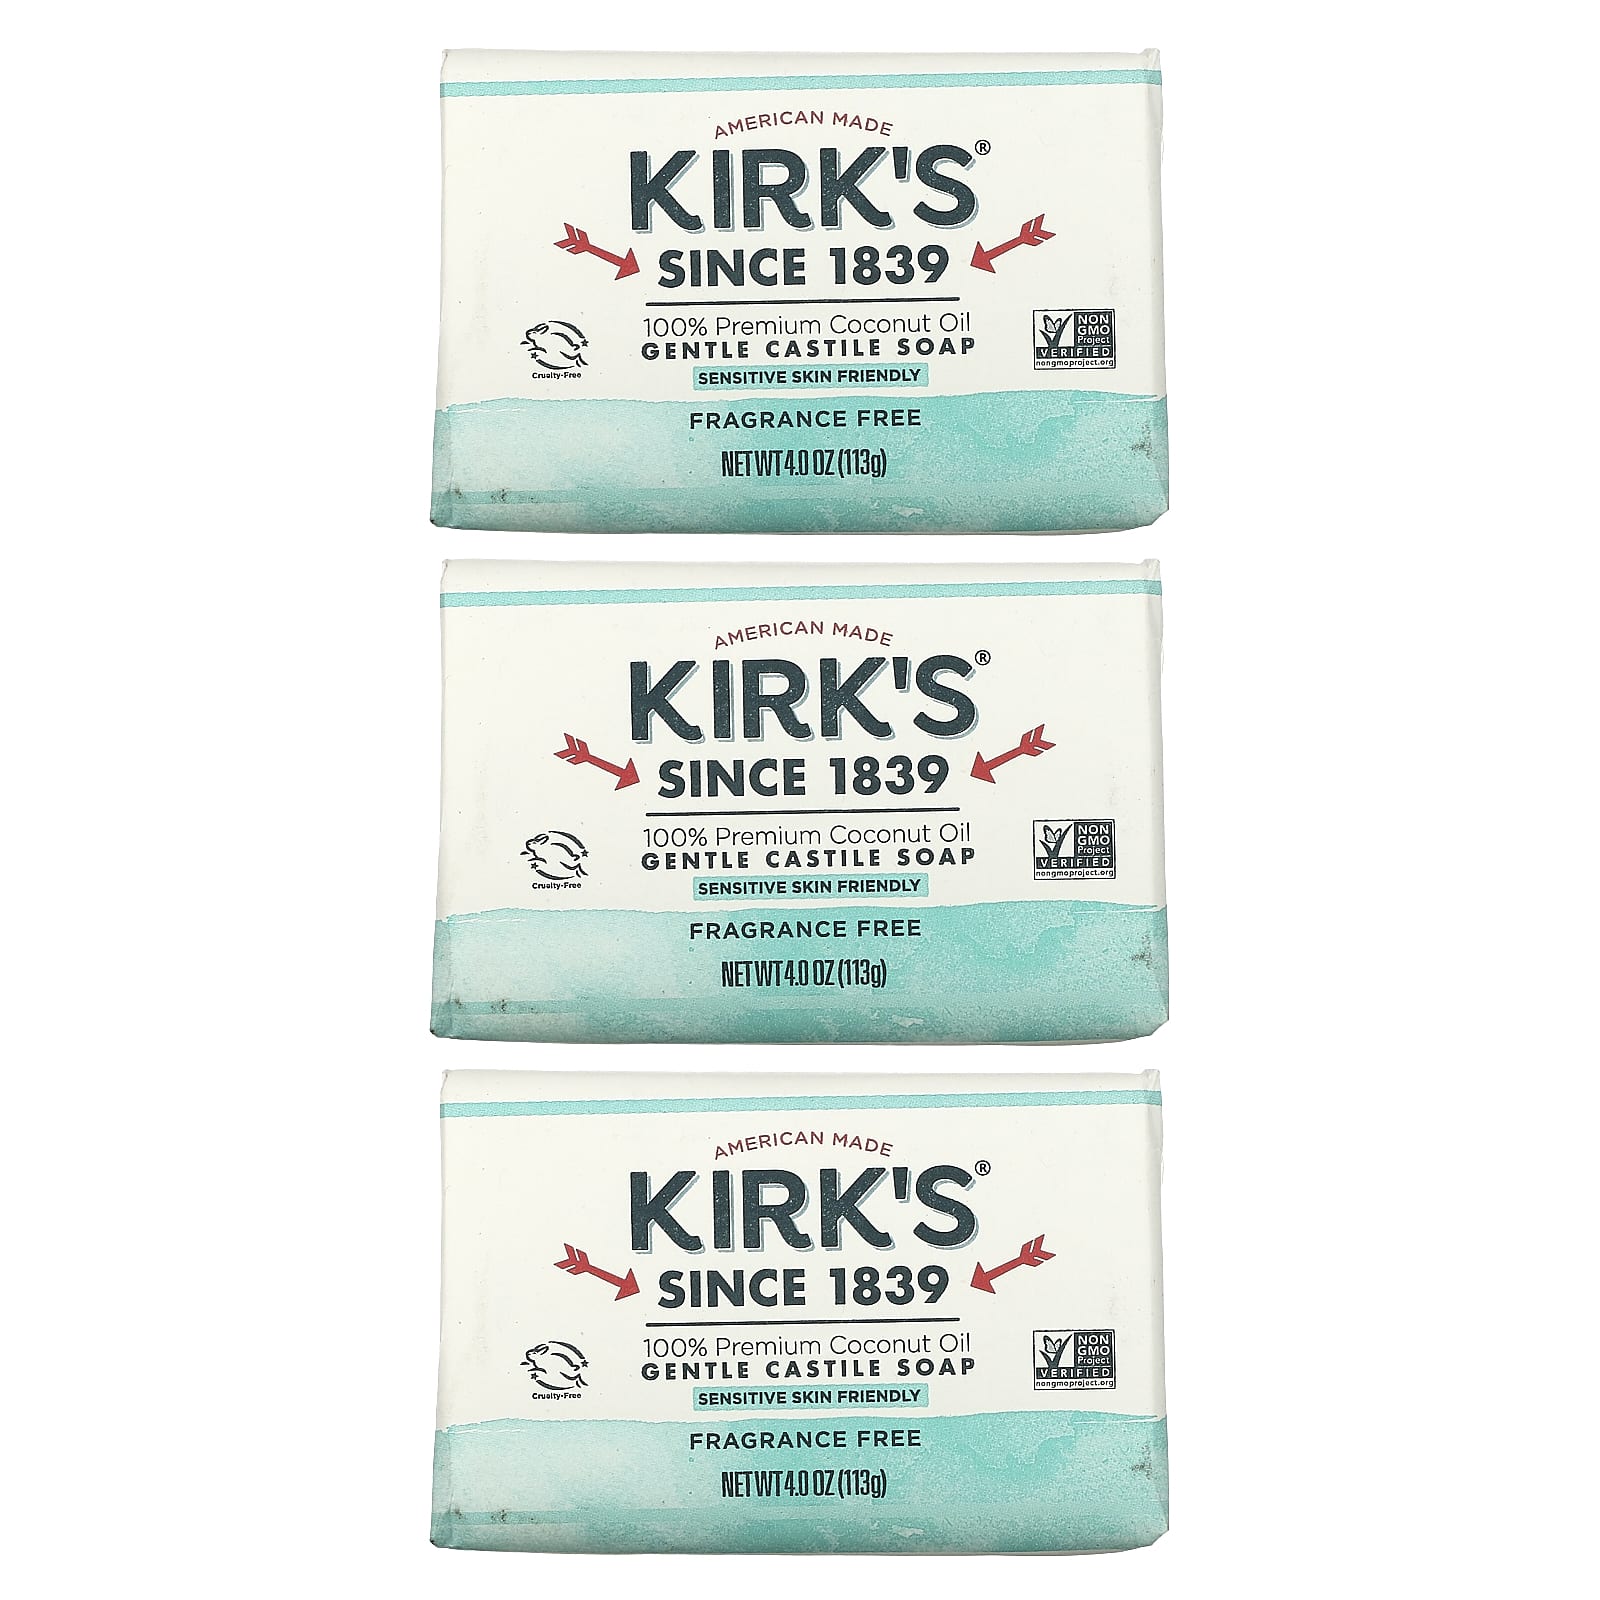 Kirk's Gentle Castile Soap Bar Fragrance Free 3 Bars 4.0 oz (113 g) Each